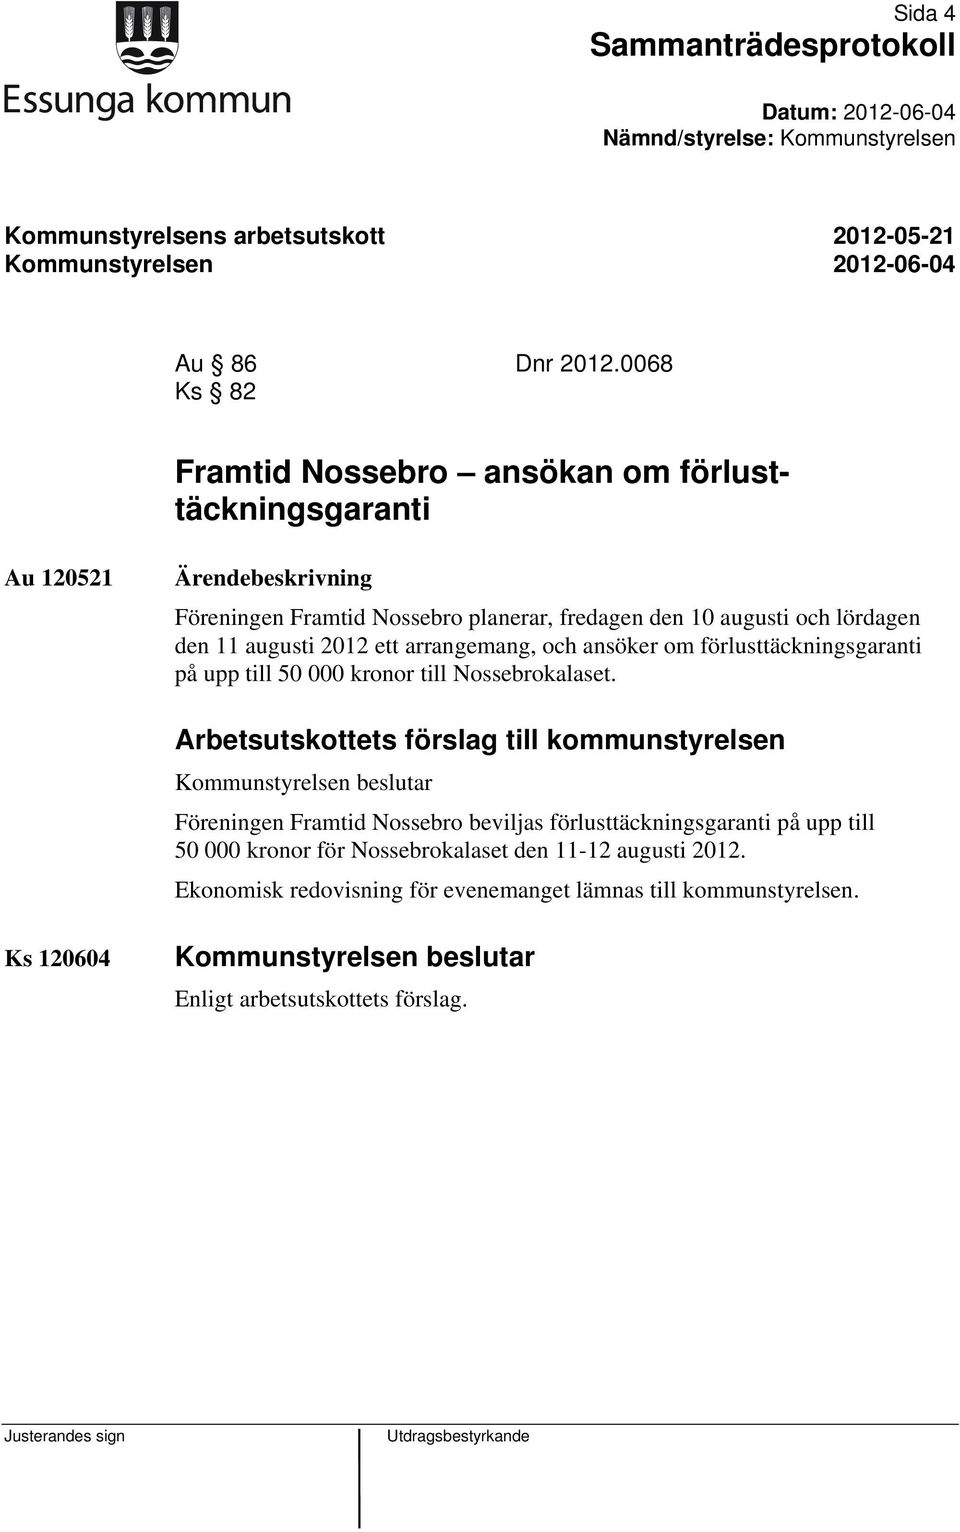 11 augusti 2012 ett arrangemang, och ansöker om förlusttäckningsgaranti på upp till 50 000 kronor till Nossebrokalaset.